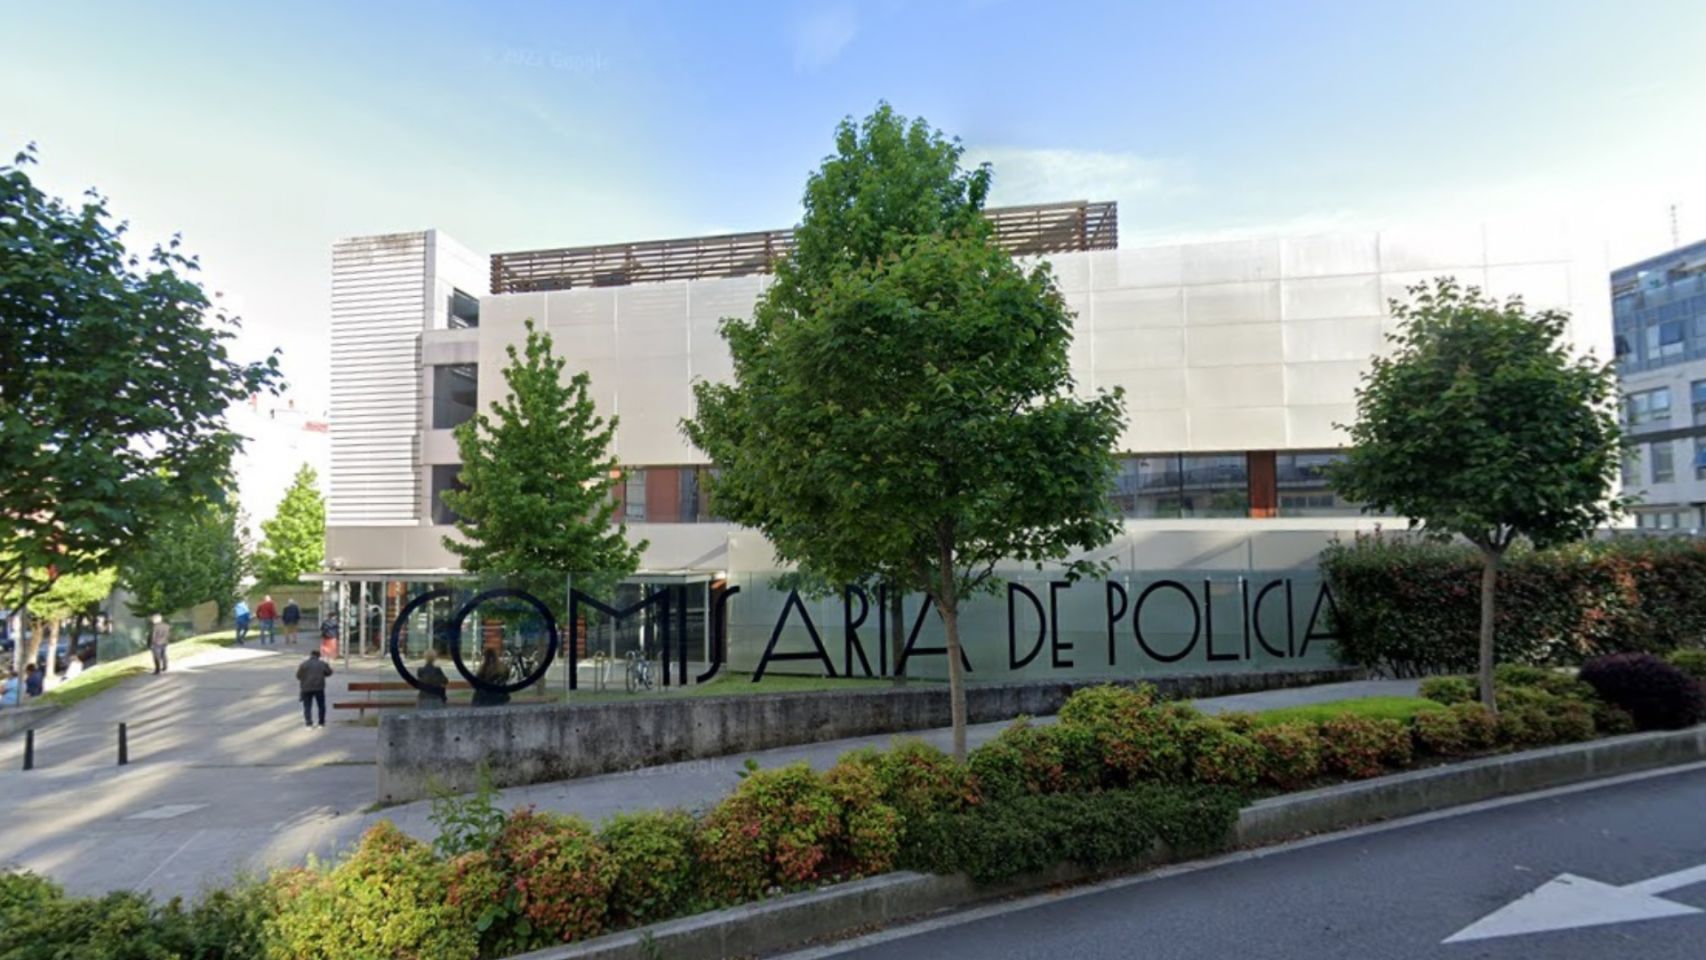 Comisaría de la Policía Nacional de Vigo en la calle Álvaro Cunqueiro.